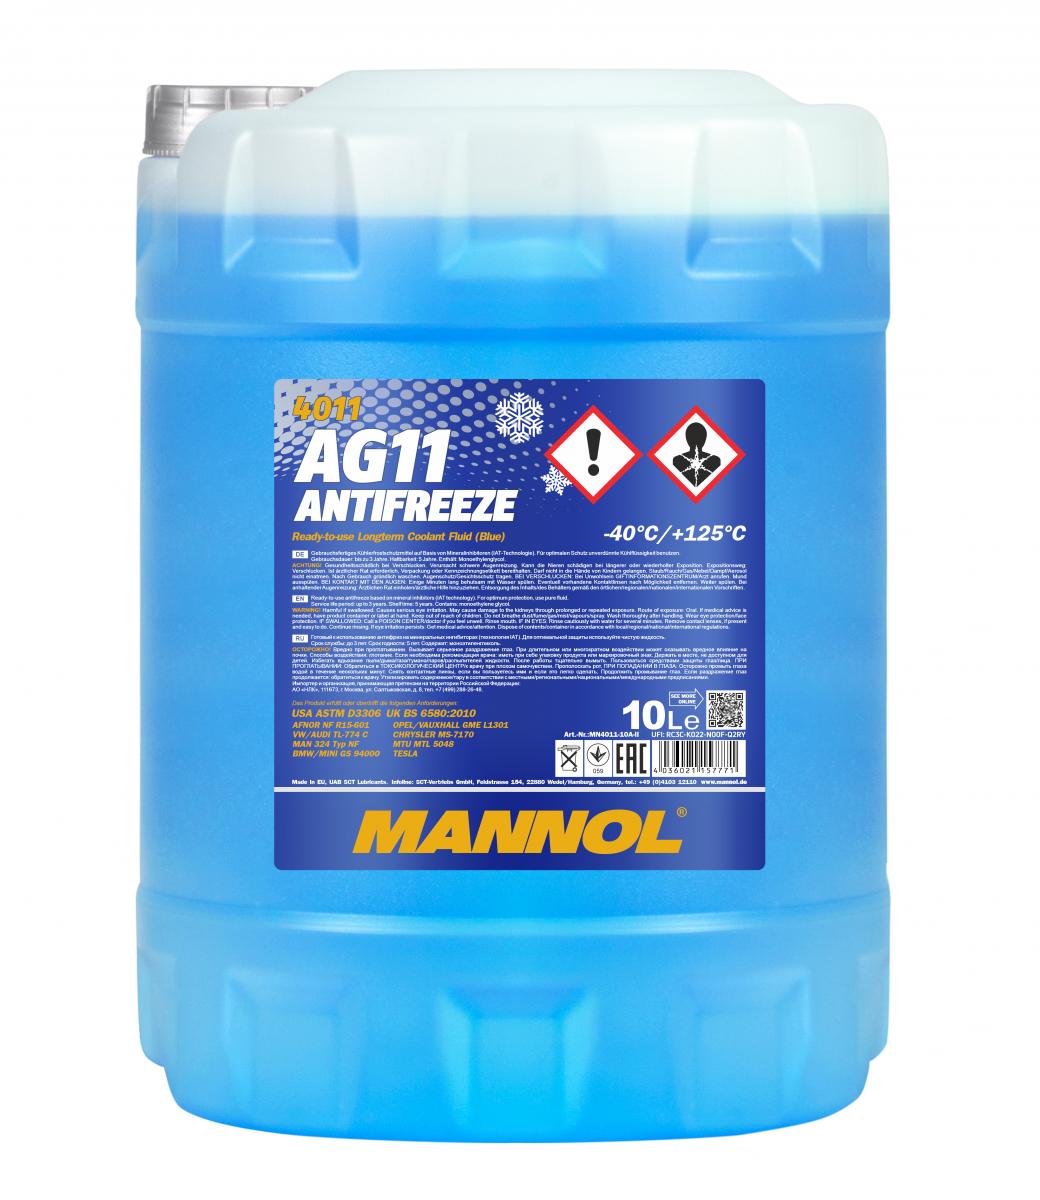 10 Liter MANNOL Antifreeze AG11 Fertig Mix blau (-40°C) G11 Kühlerfrostschutz